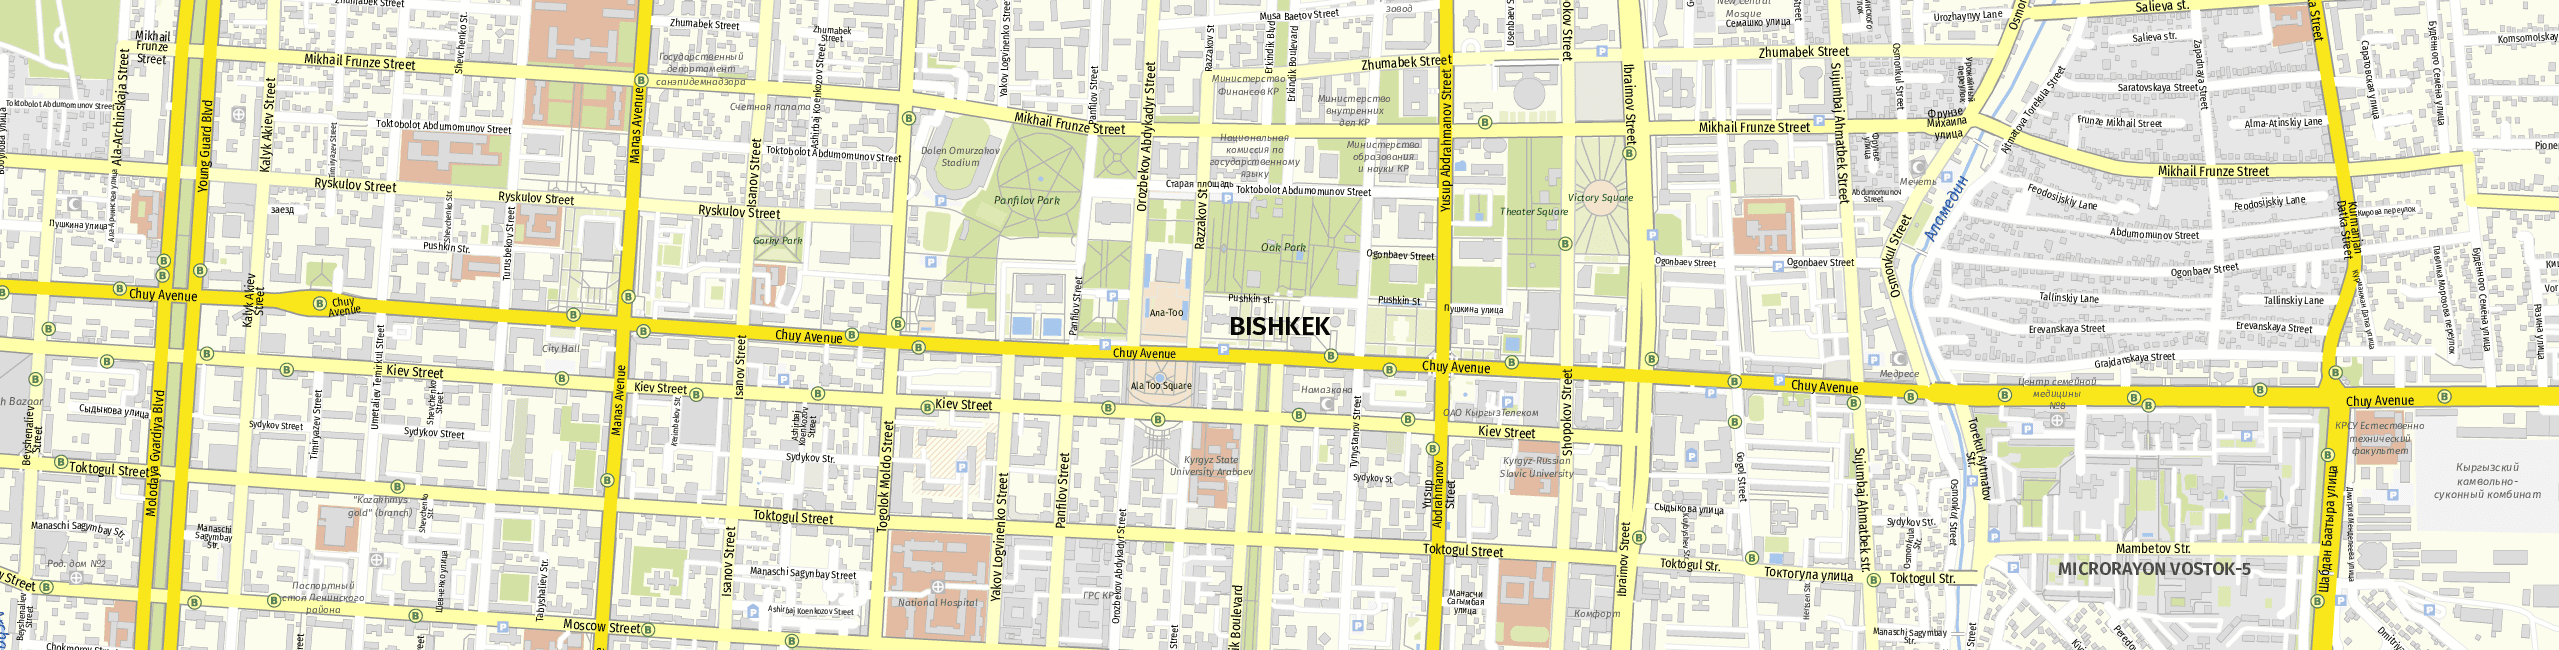 Stadtplan Bischkek zum Downloaden.